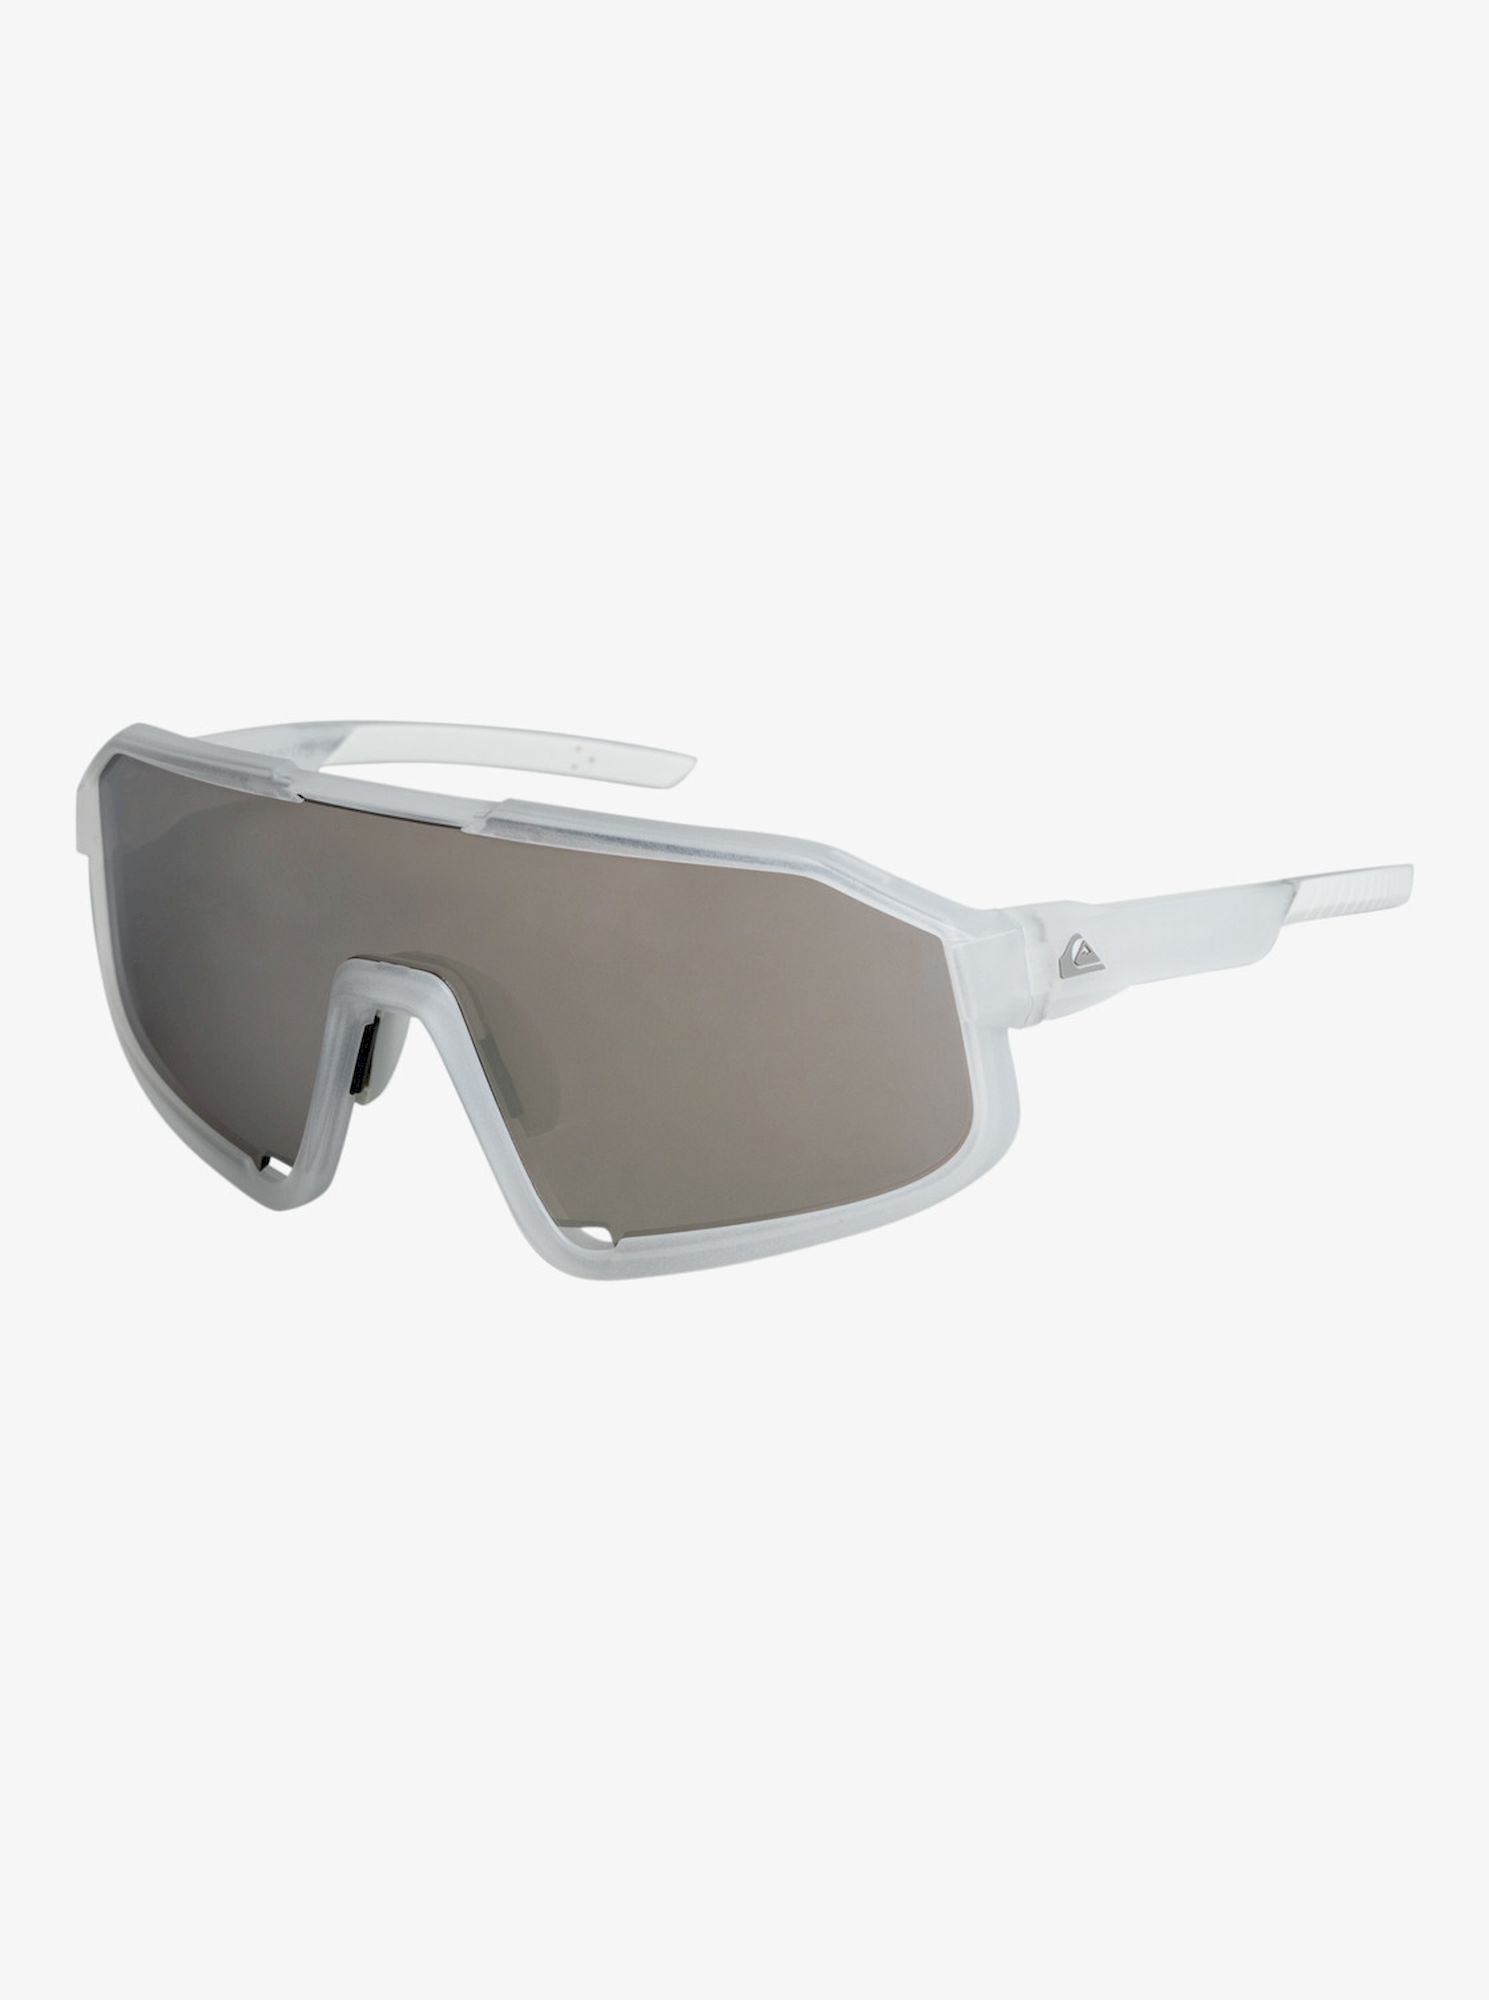 Quiksilver Slash+ - Sunglasses - Men's | Hardloop